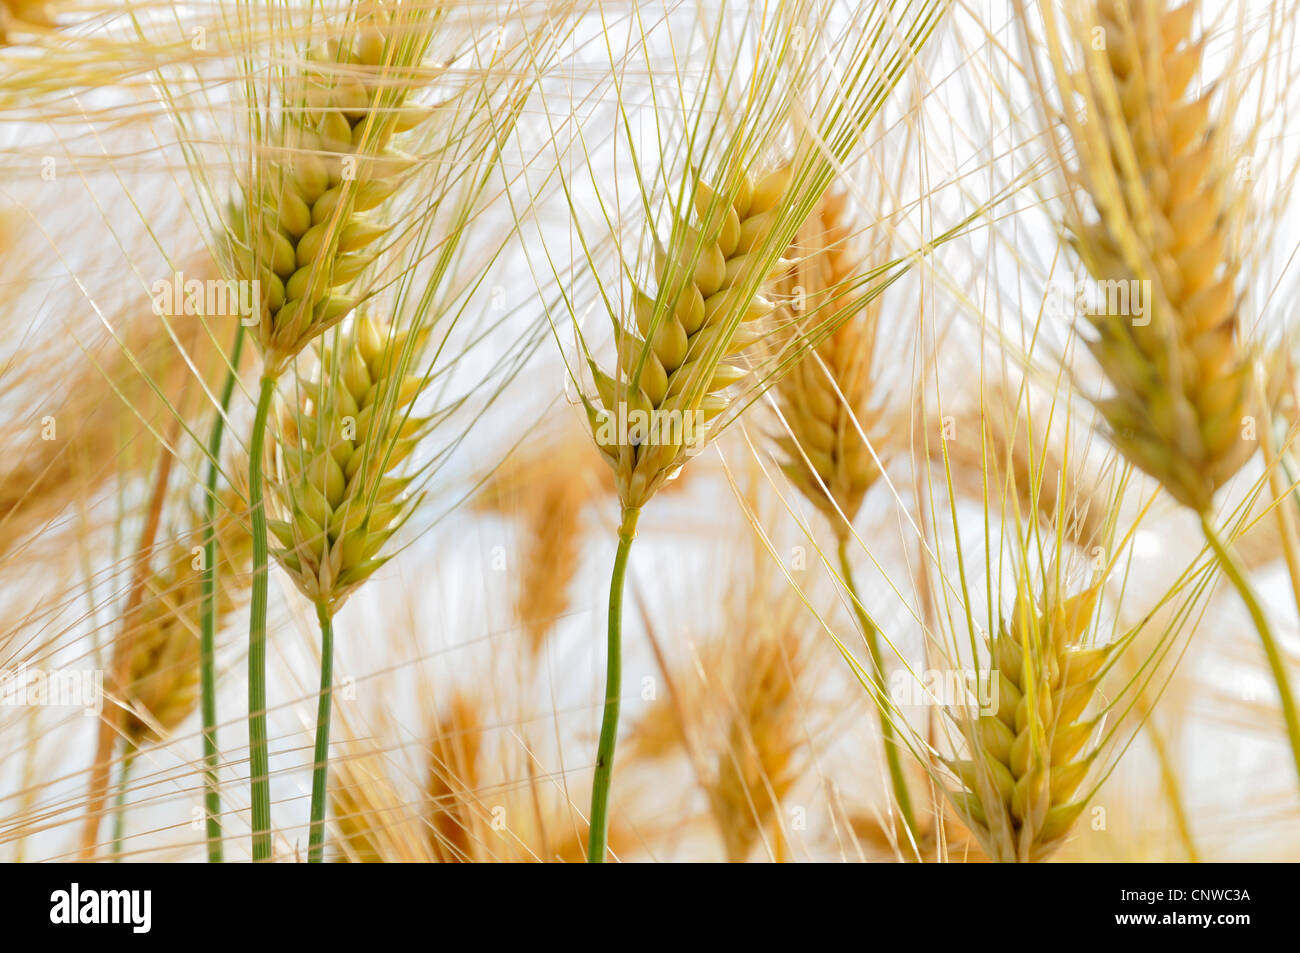 barley (Hordeum vulgare), barley ears, Germany Stock Photo